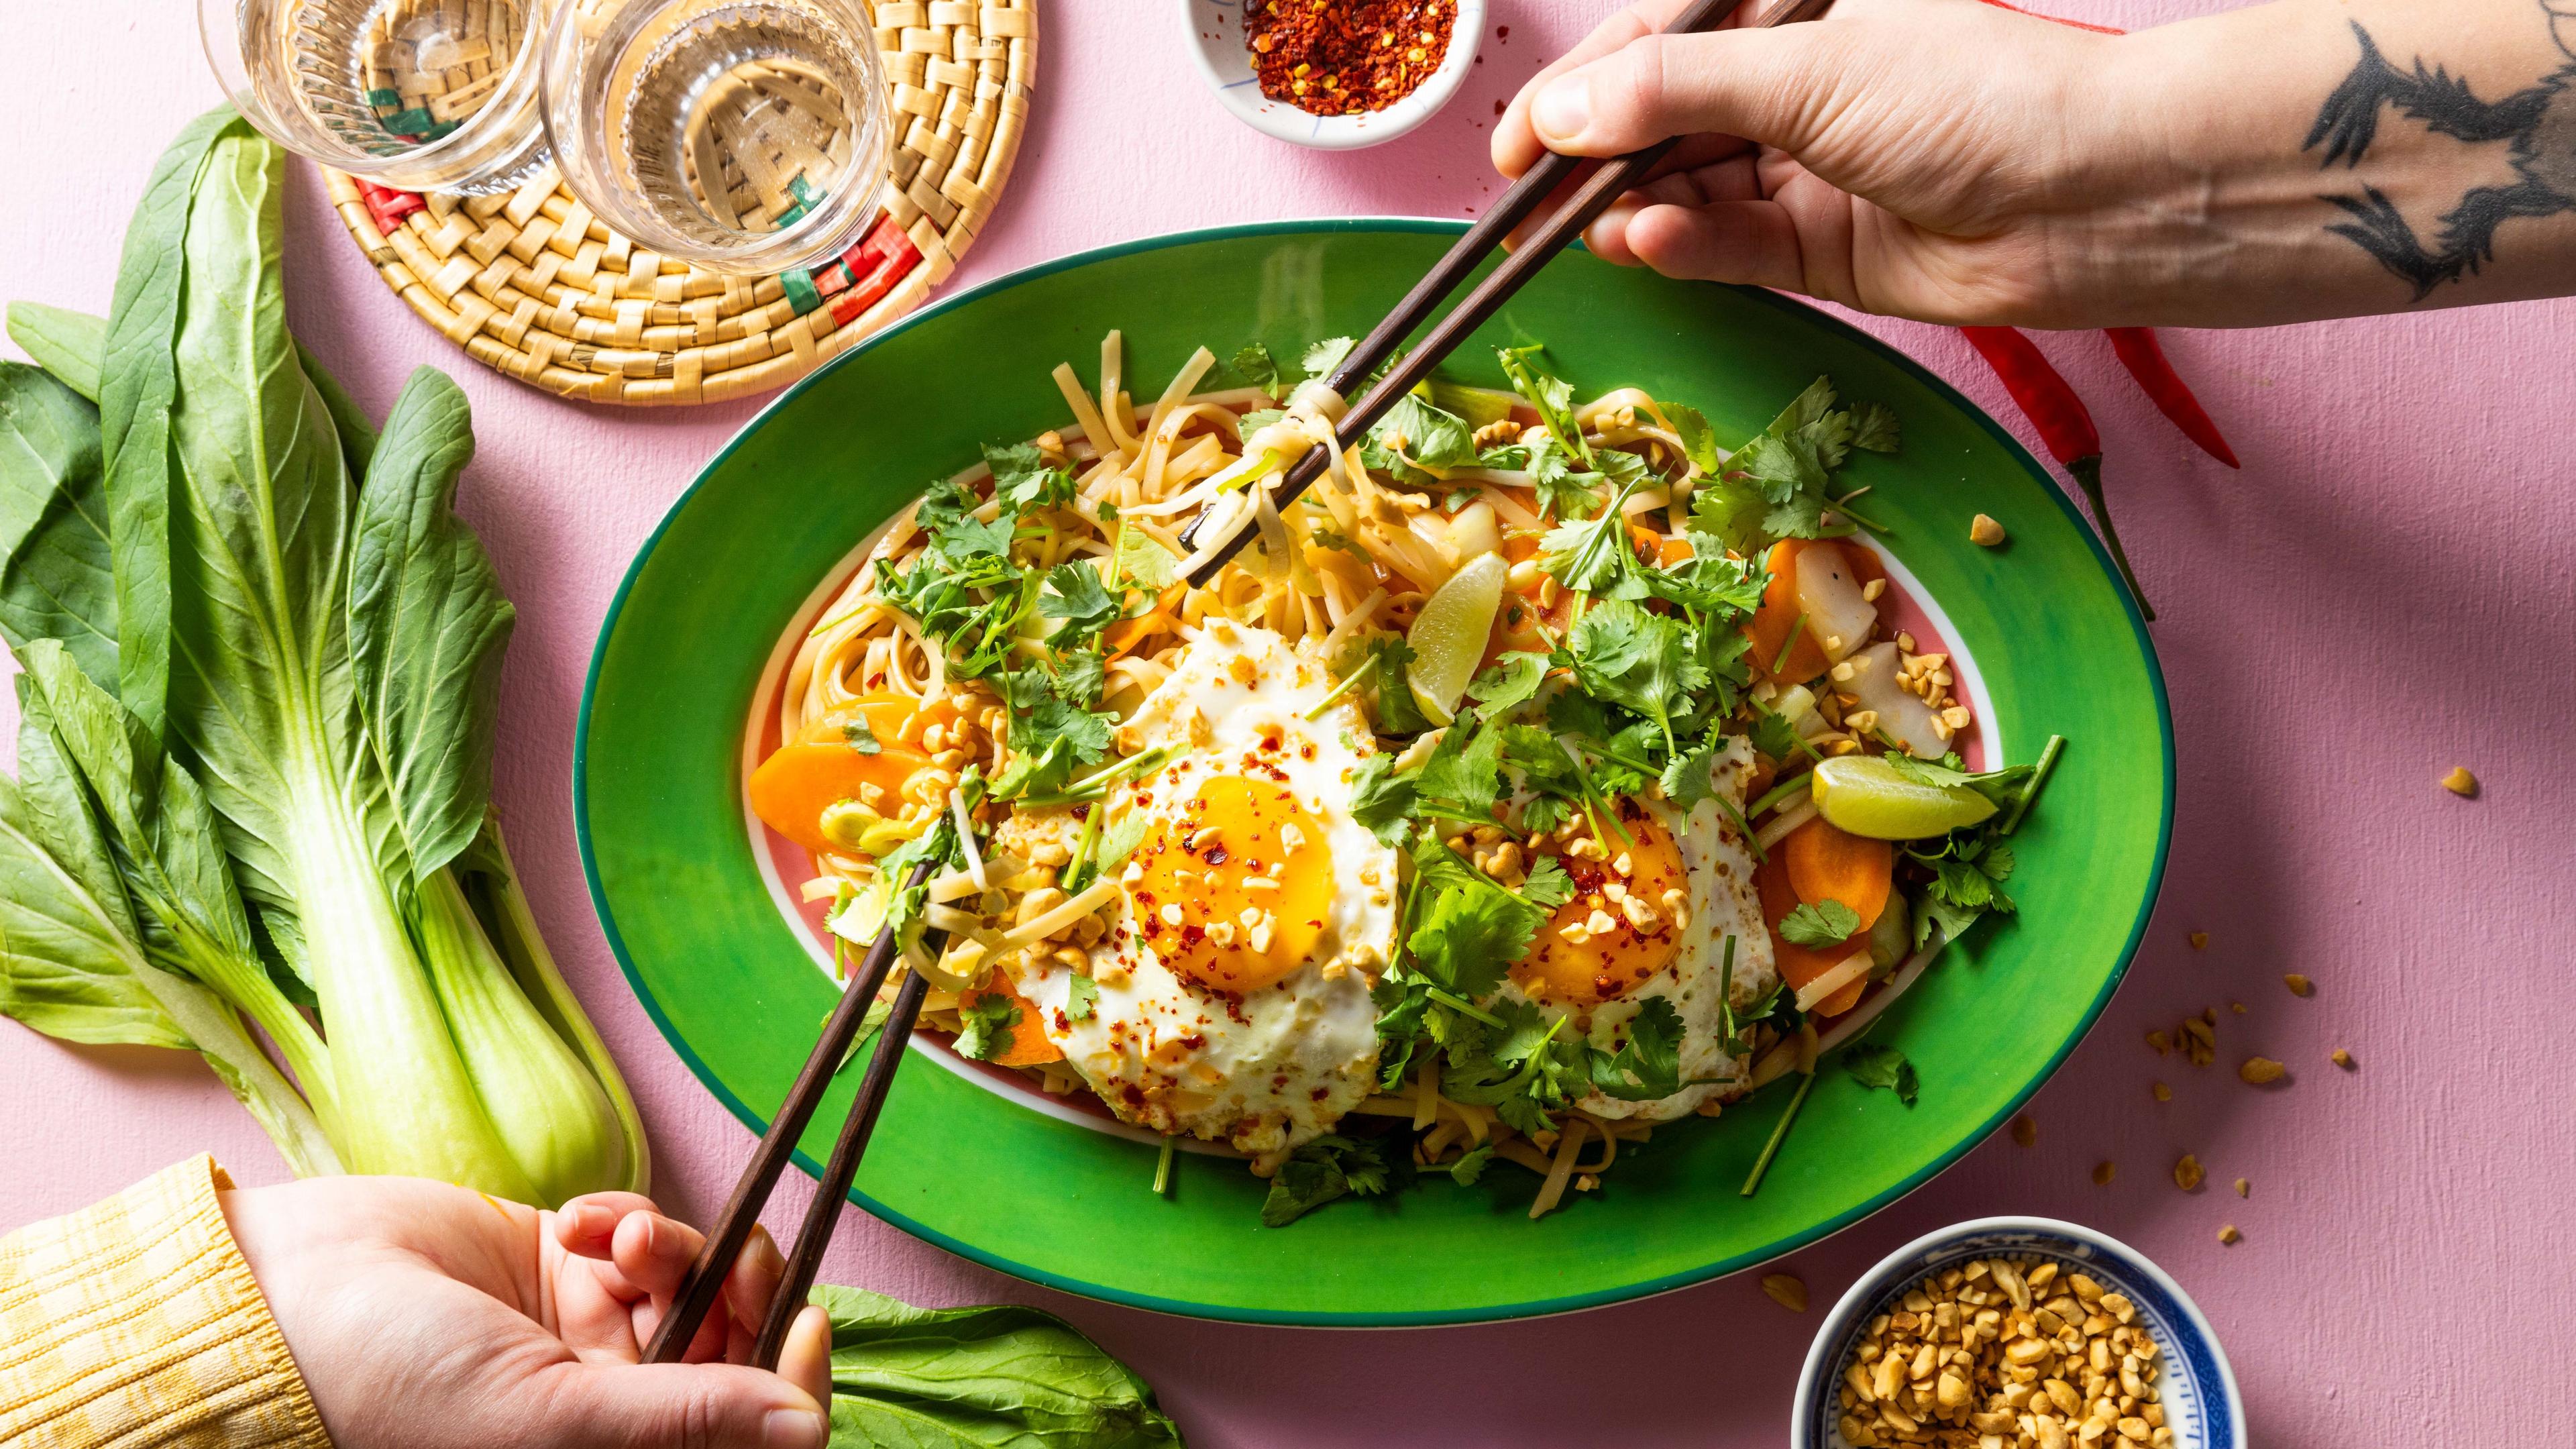 Thailandsk mad: 5 favoritter fra det thailandske køkken